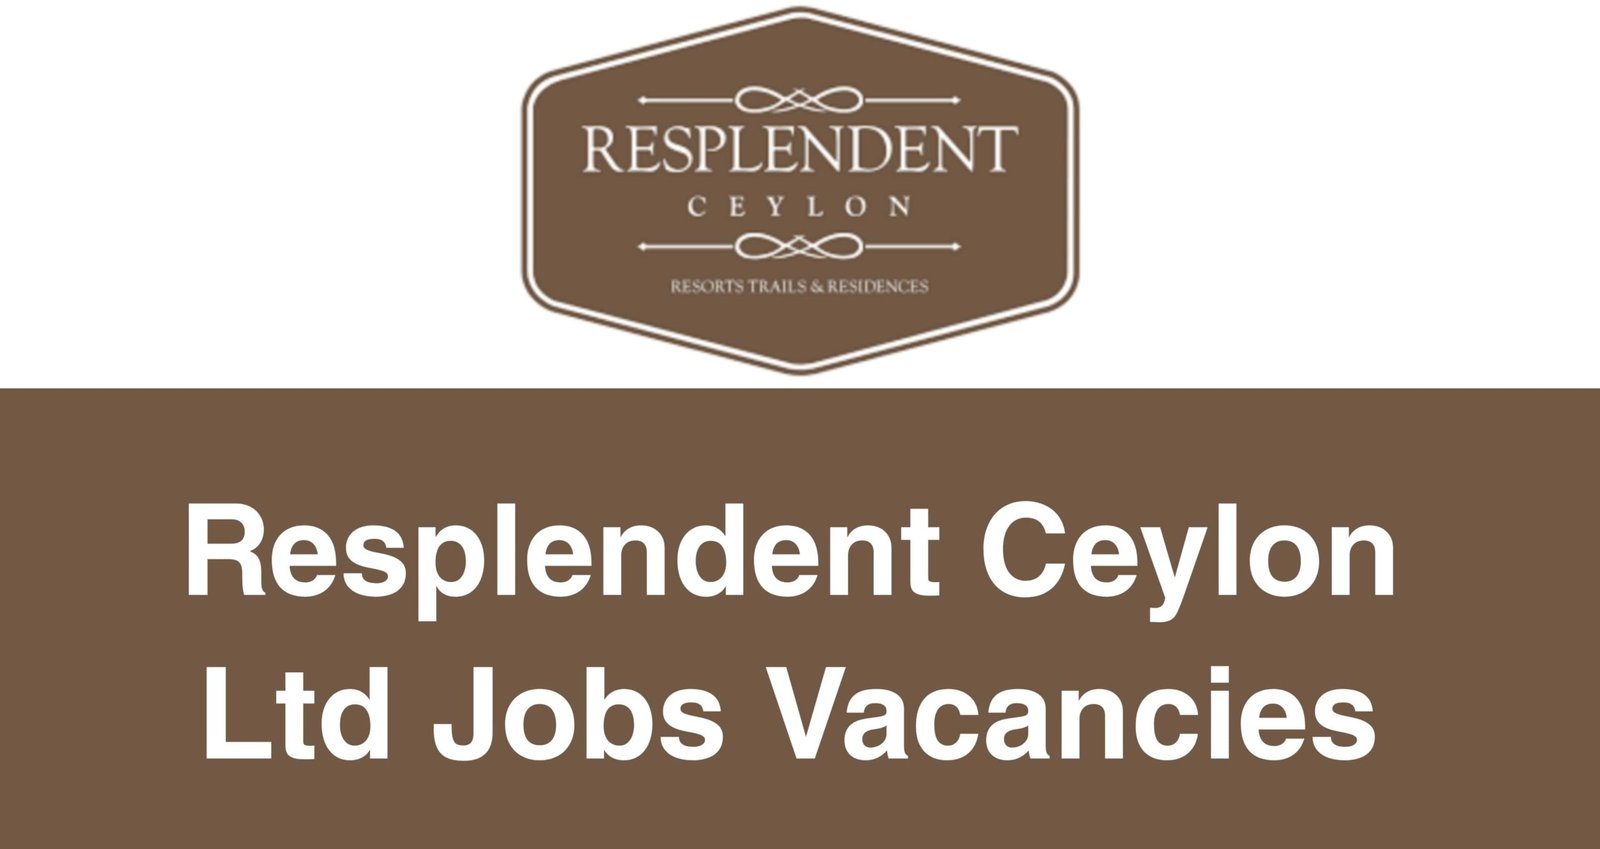 Resplendent Ceylon Ltd Jobs Vacancies